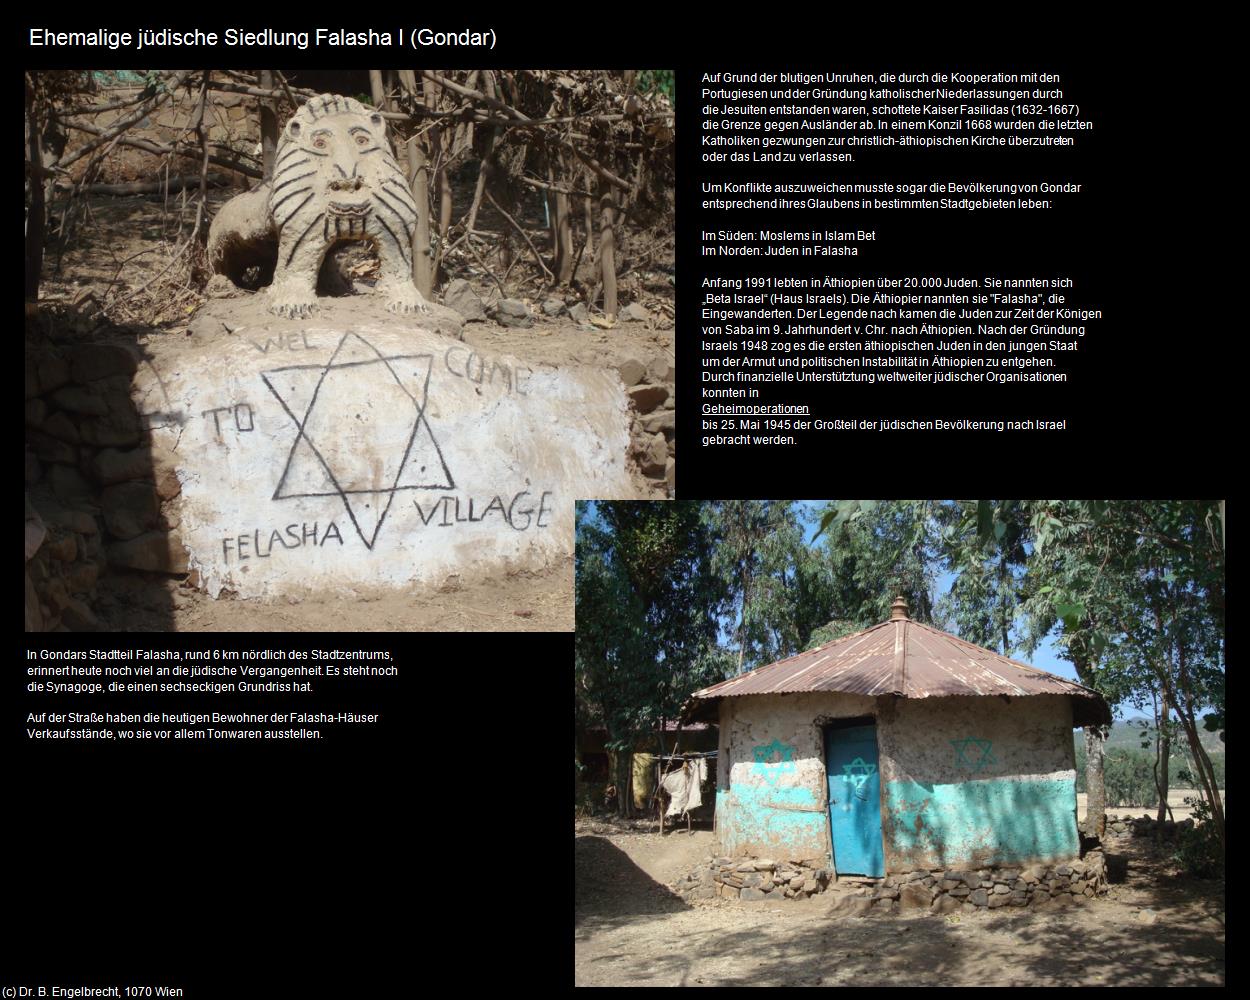 Ehem. jüdische Siedlung Falasha (Wolleka) (Gondar) in Äthiopien(c)B.Engelbrecht